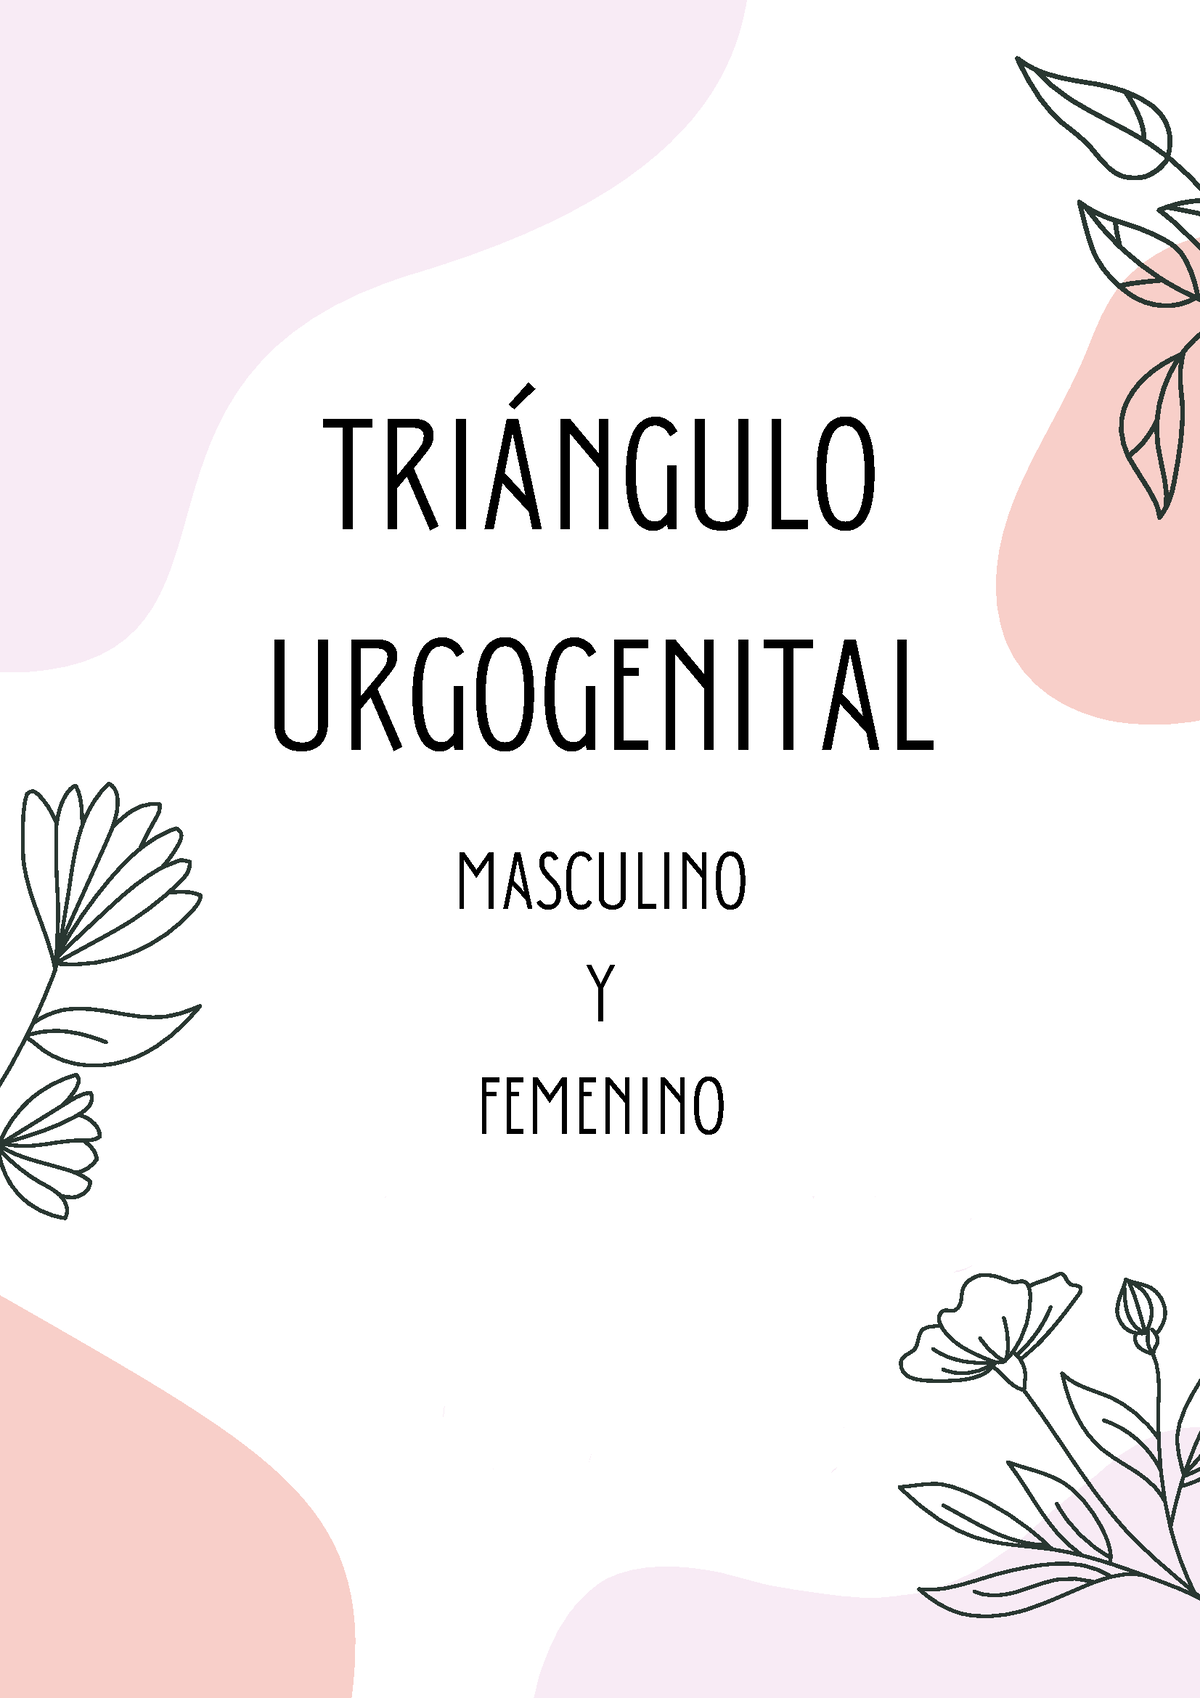 triángulo urogenital